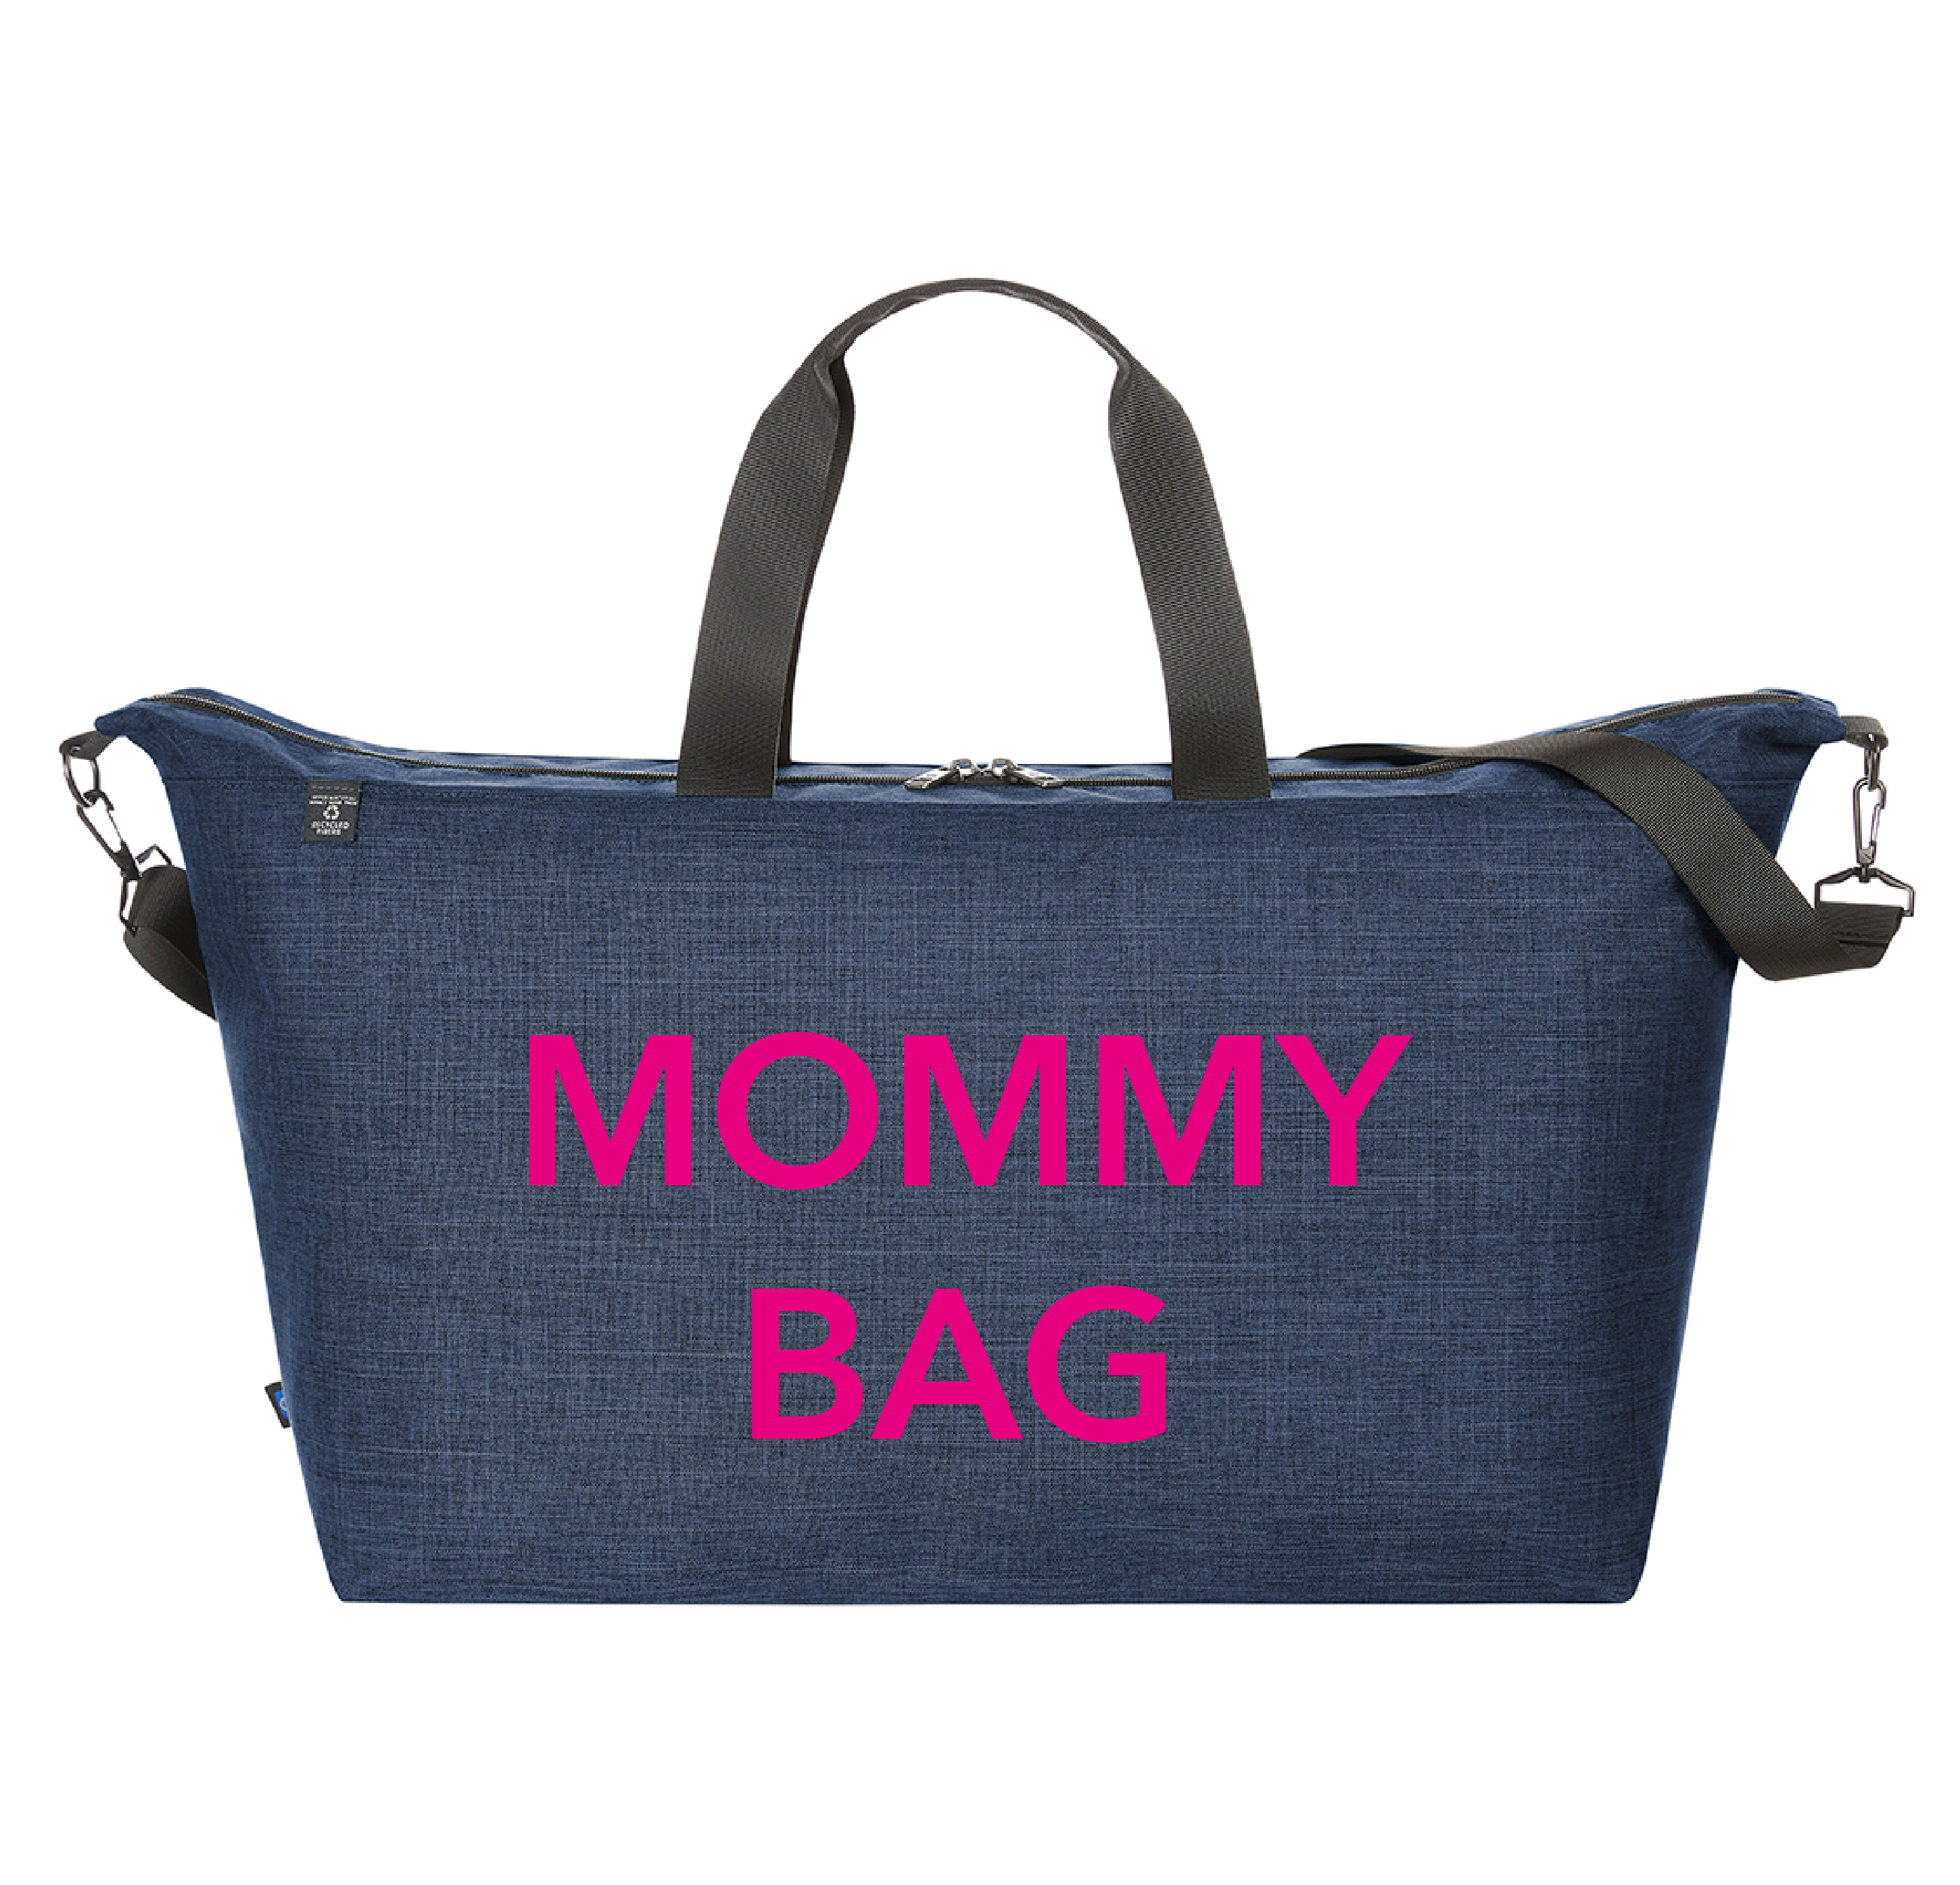 Borsone Parto Mommy Bag Nero Glitter e coppia Beauty Case in vendita  all'ingrosso per il tuo negozio